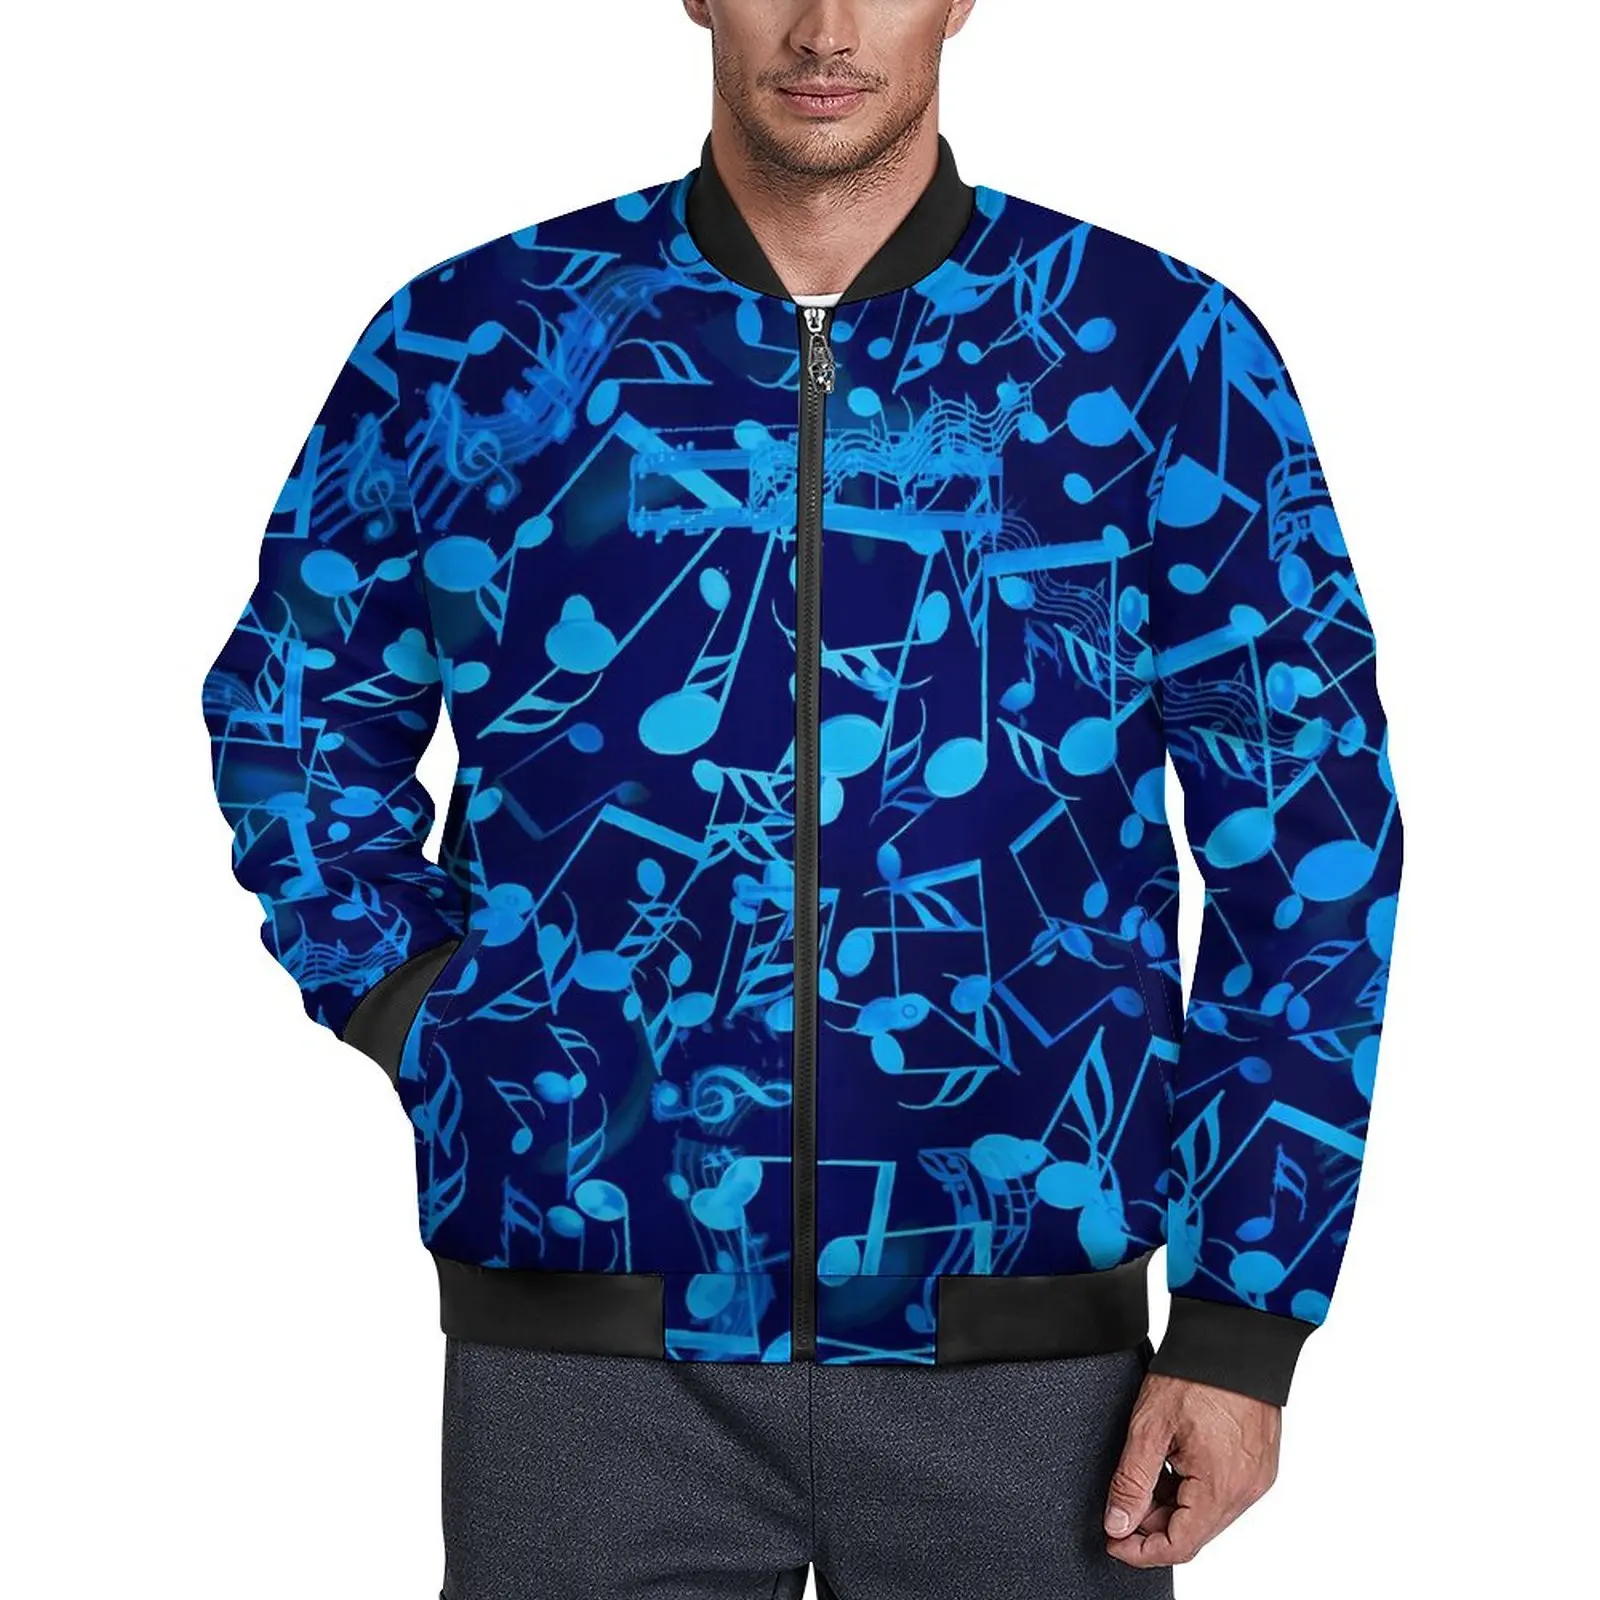 

Ветровка мужская с принтом музыкальных нот, повседневная синяя ветровка в стиле ретро, графическое пальто, верхняя одежда, большие размеры, на осень